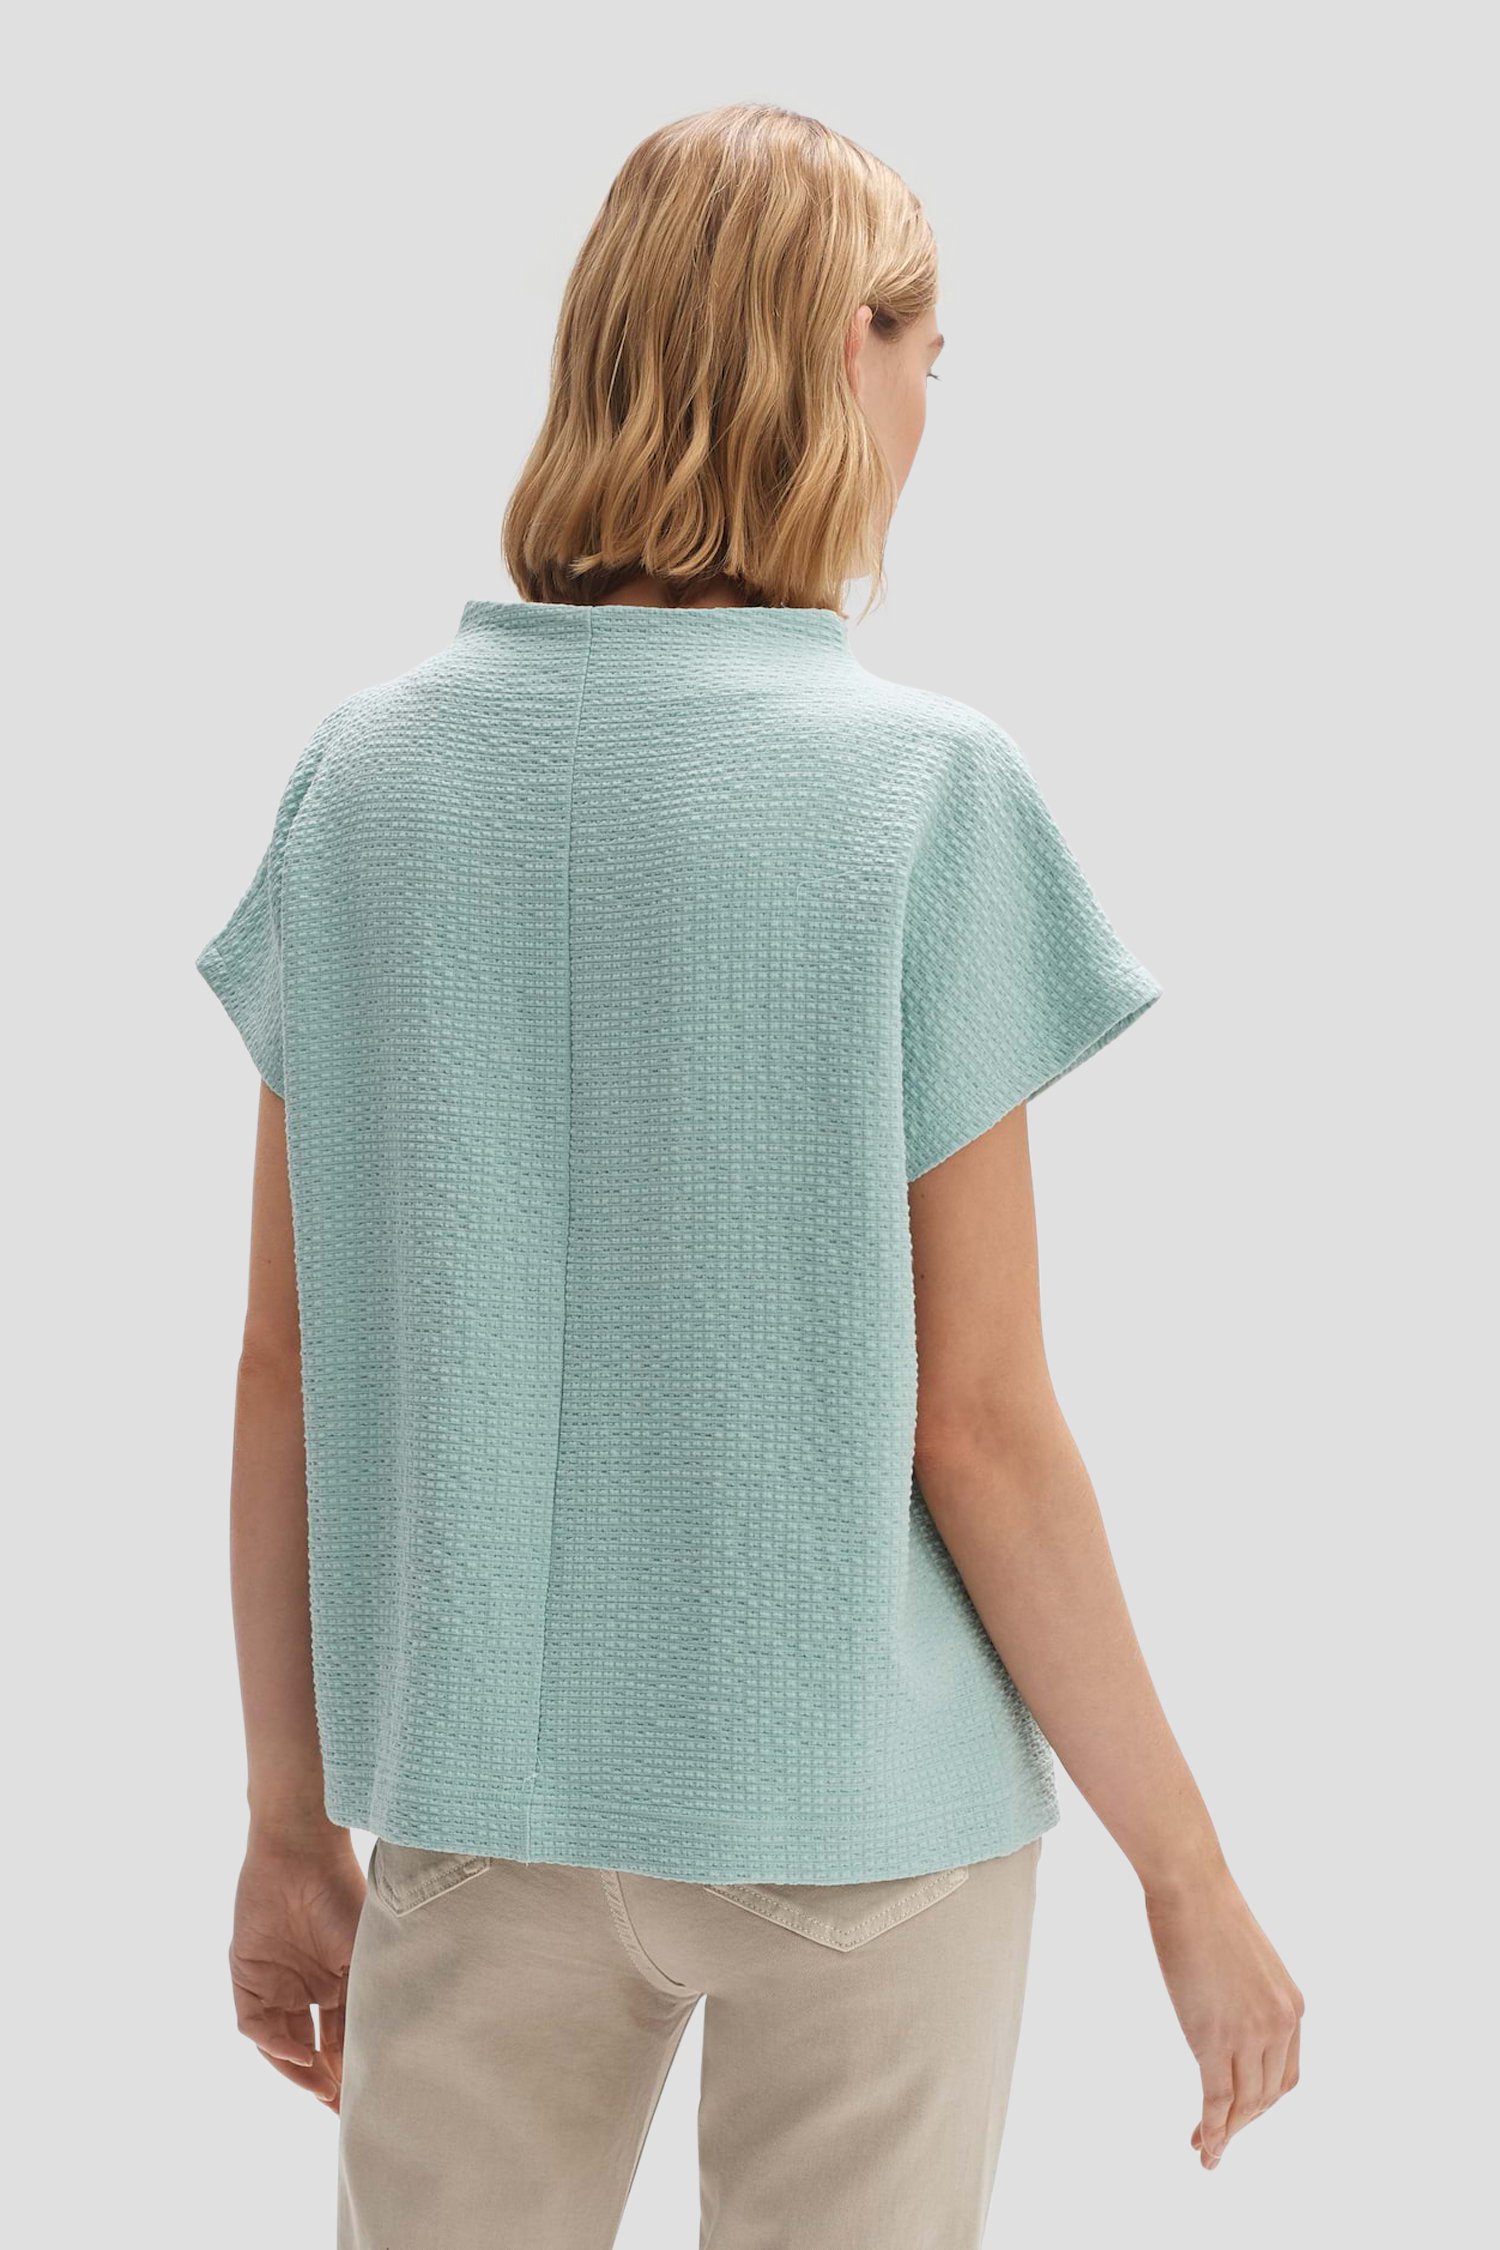 T-shirt texturé vert-bleu de Opus pour Femmes